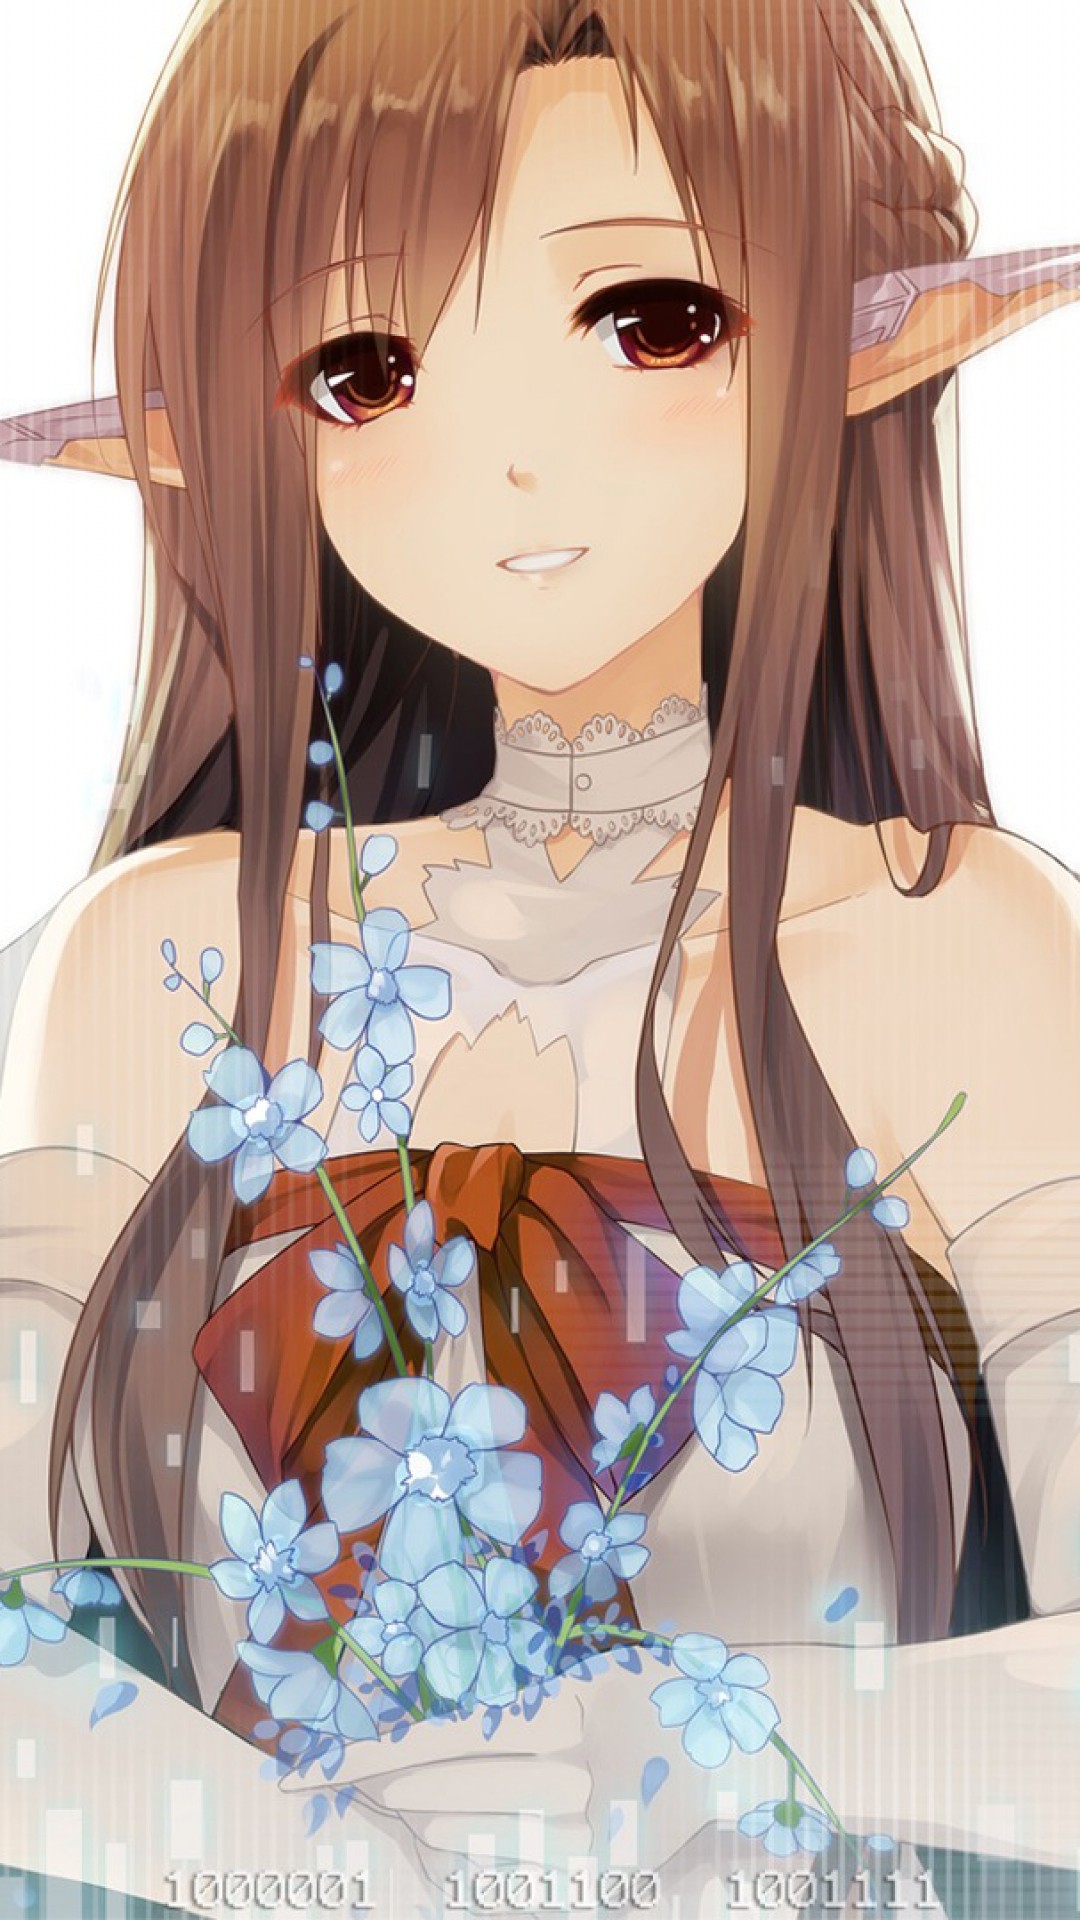 Anime 1080x1920 Sword Art Online anime girls anime pointy ears brunette flowers plants brown eyes elves Yuuki Asuna (Sword Art Online)